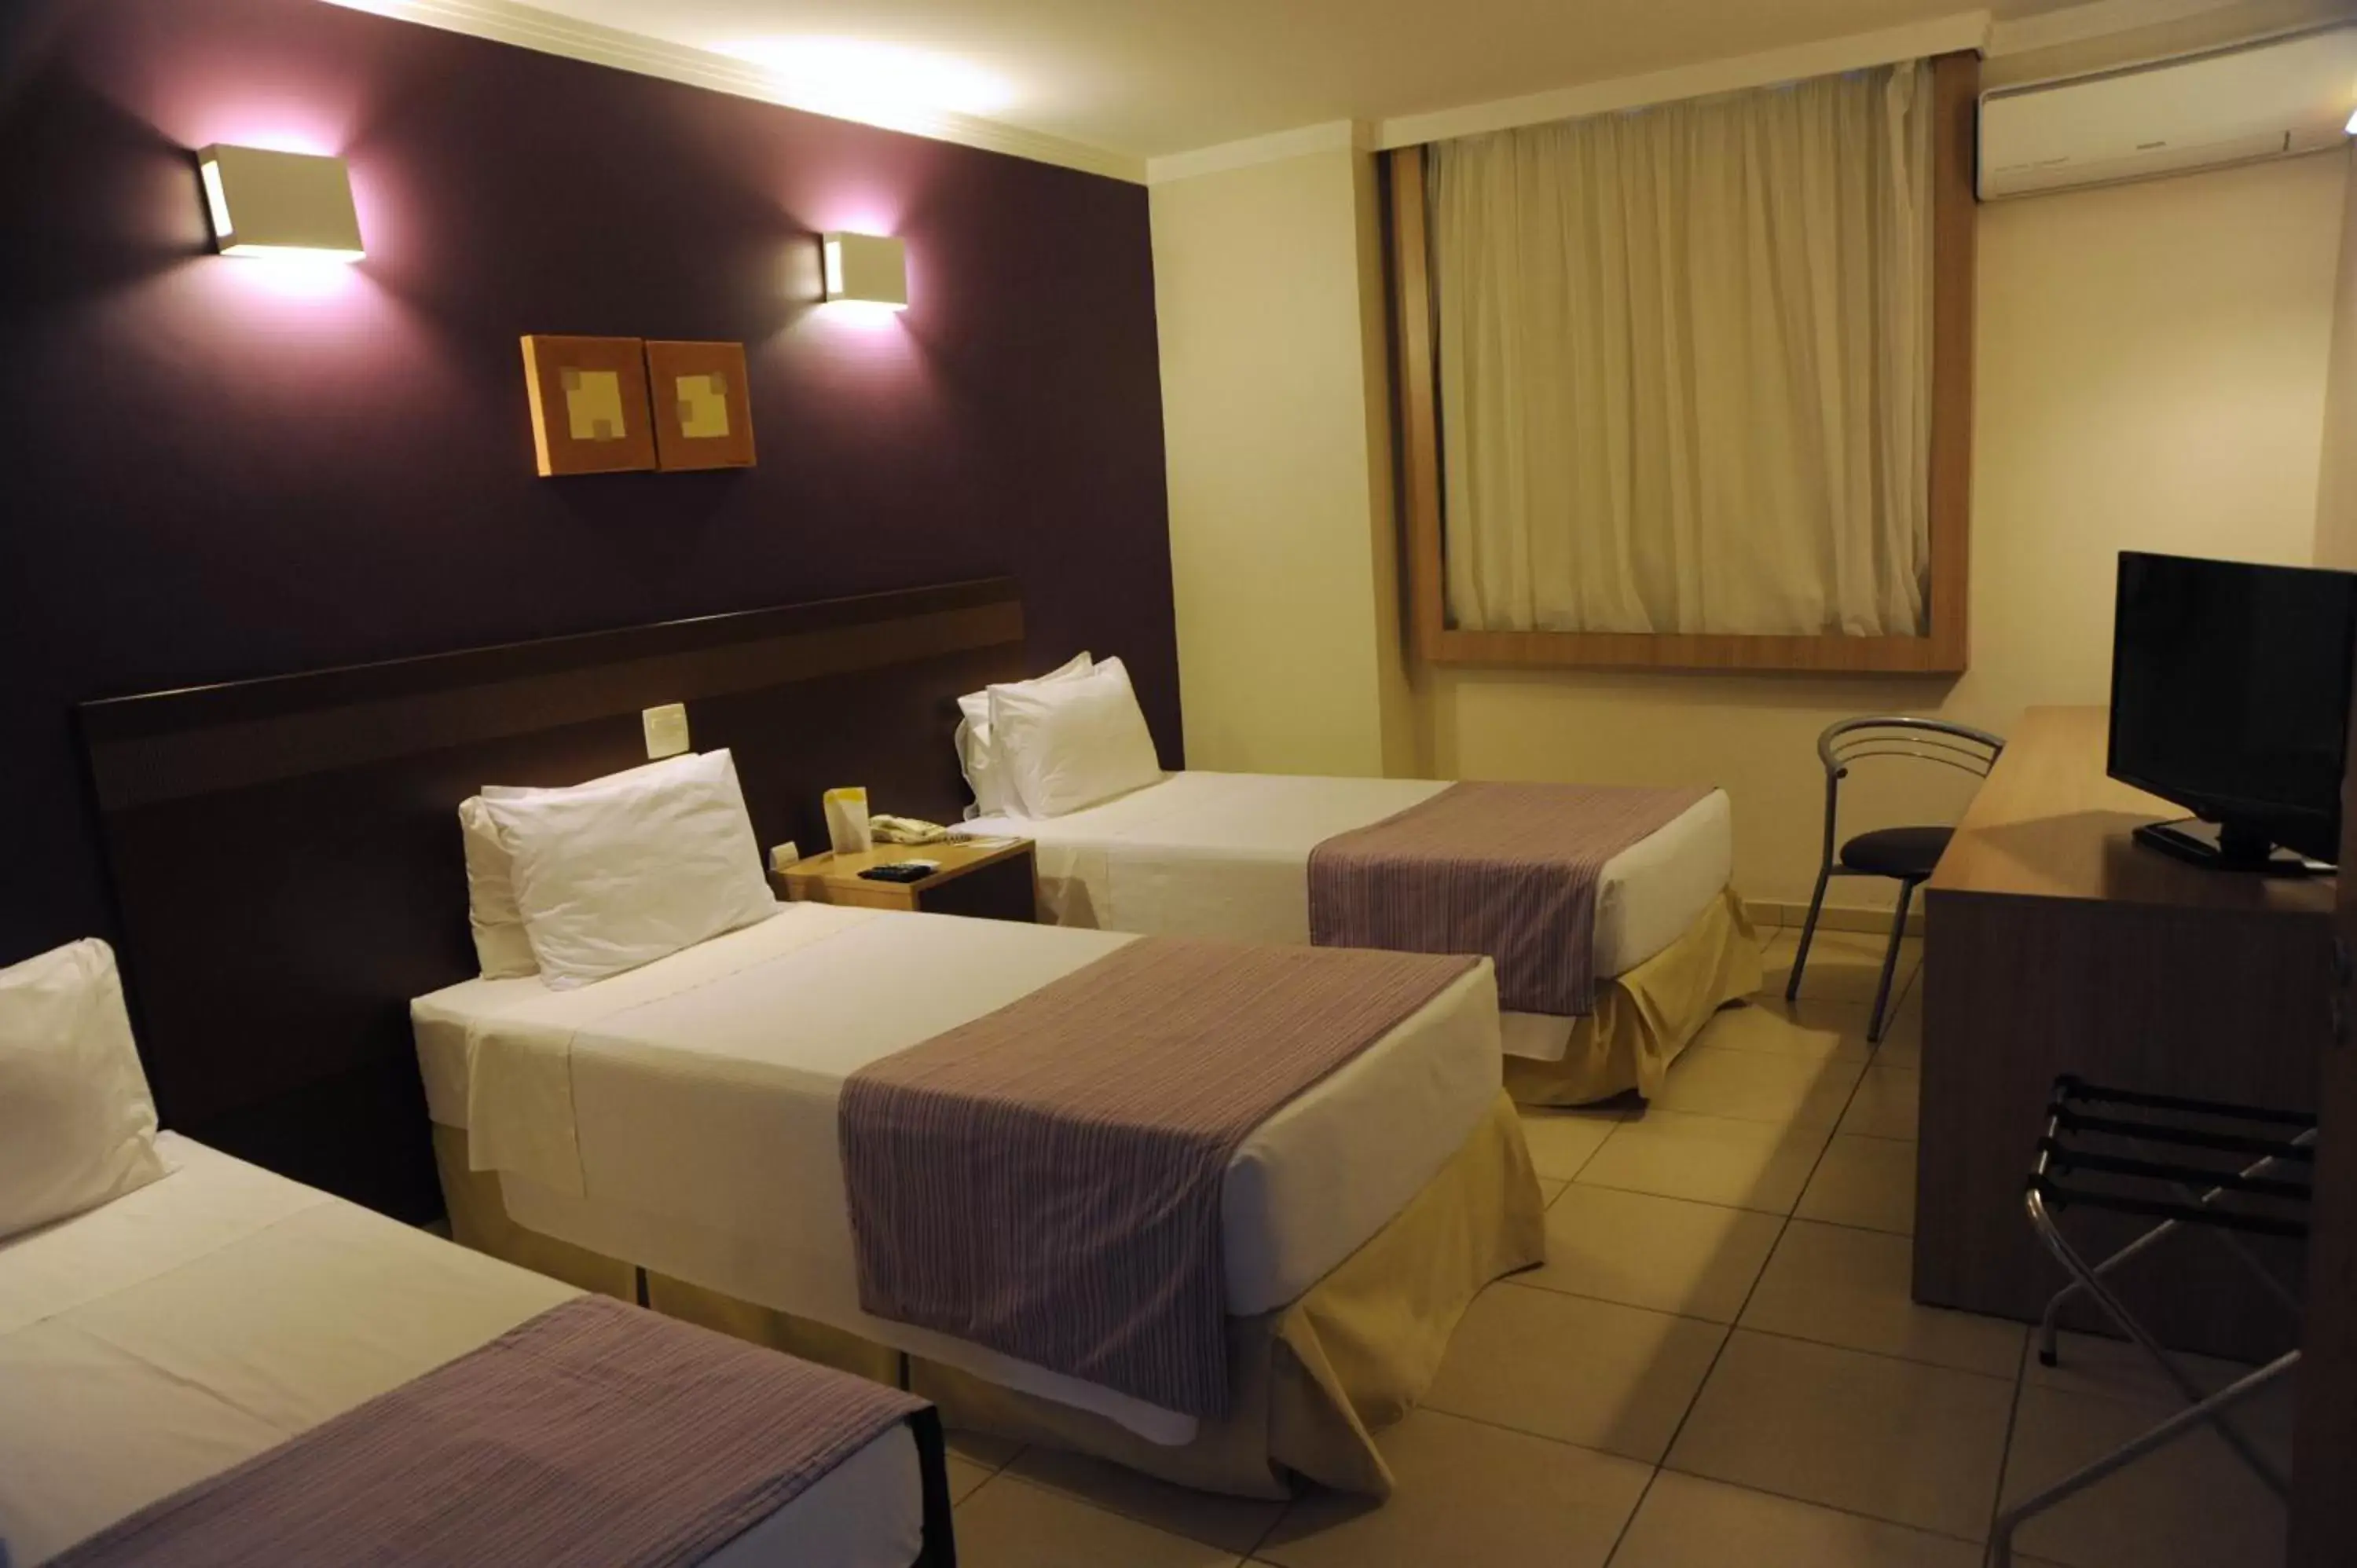 Bedroom, Bed in Comfort Hotel Araraquara